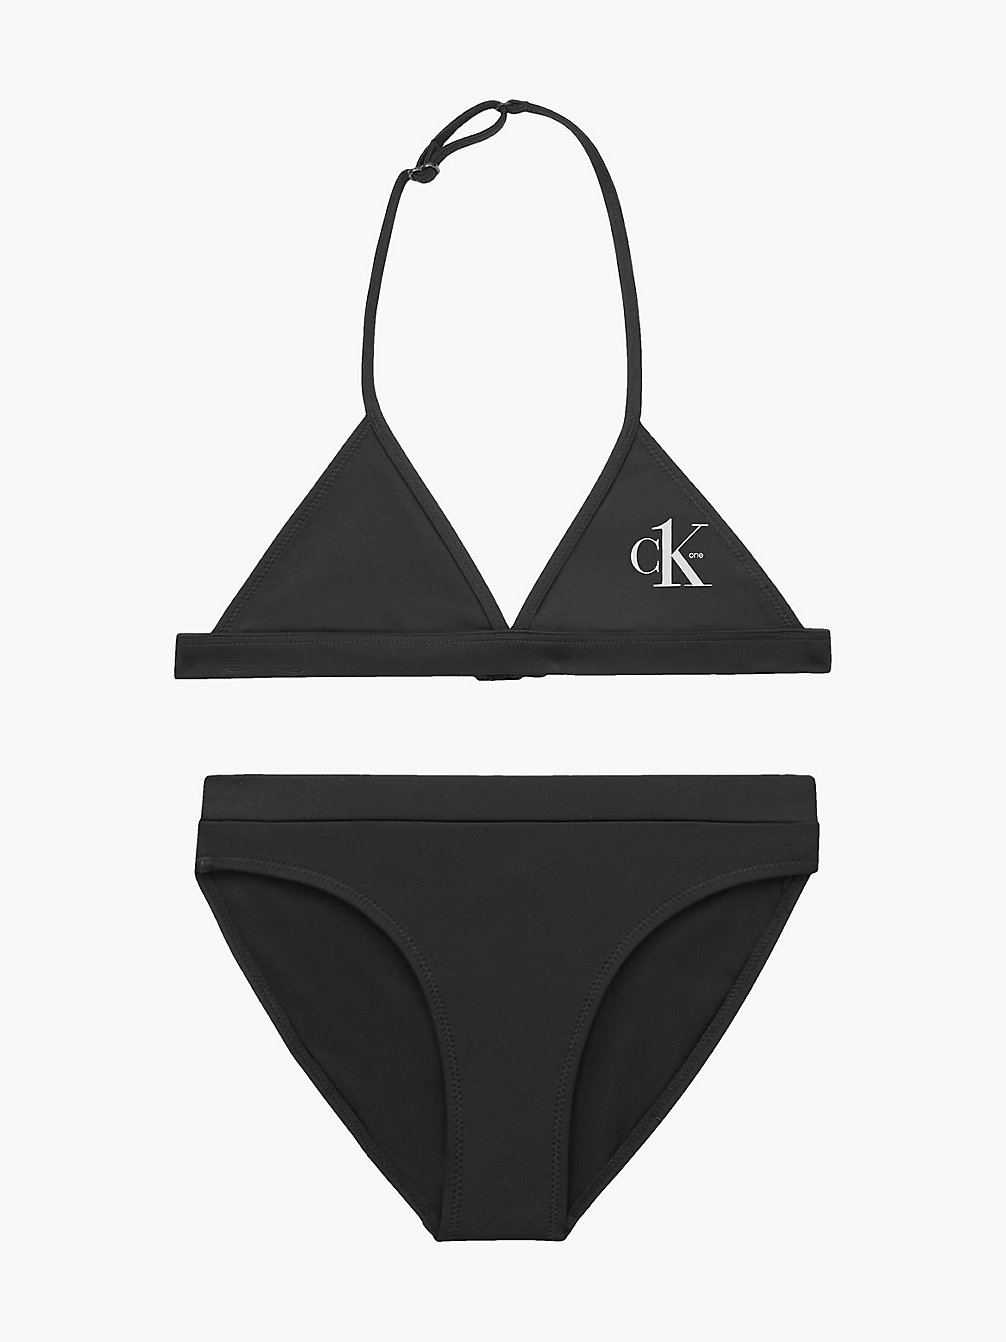 PVH BLACK > Bikini-Set Mit Triangel-Top Für Mädchen - CK One > undefined girls - Calvin Klein